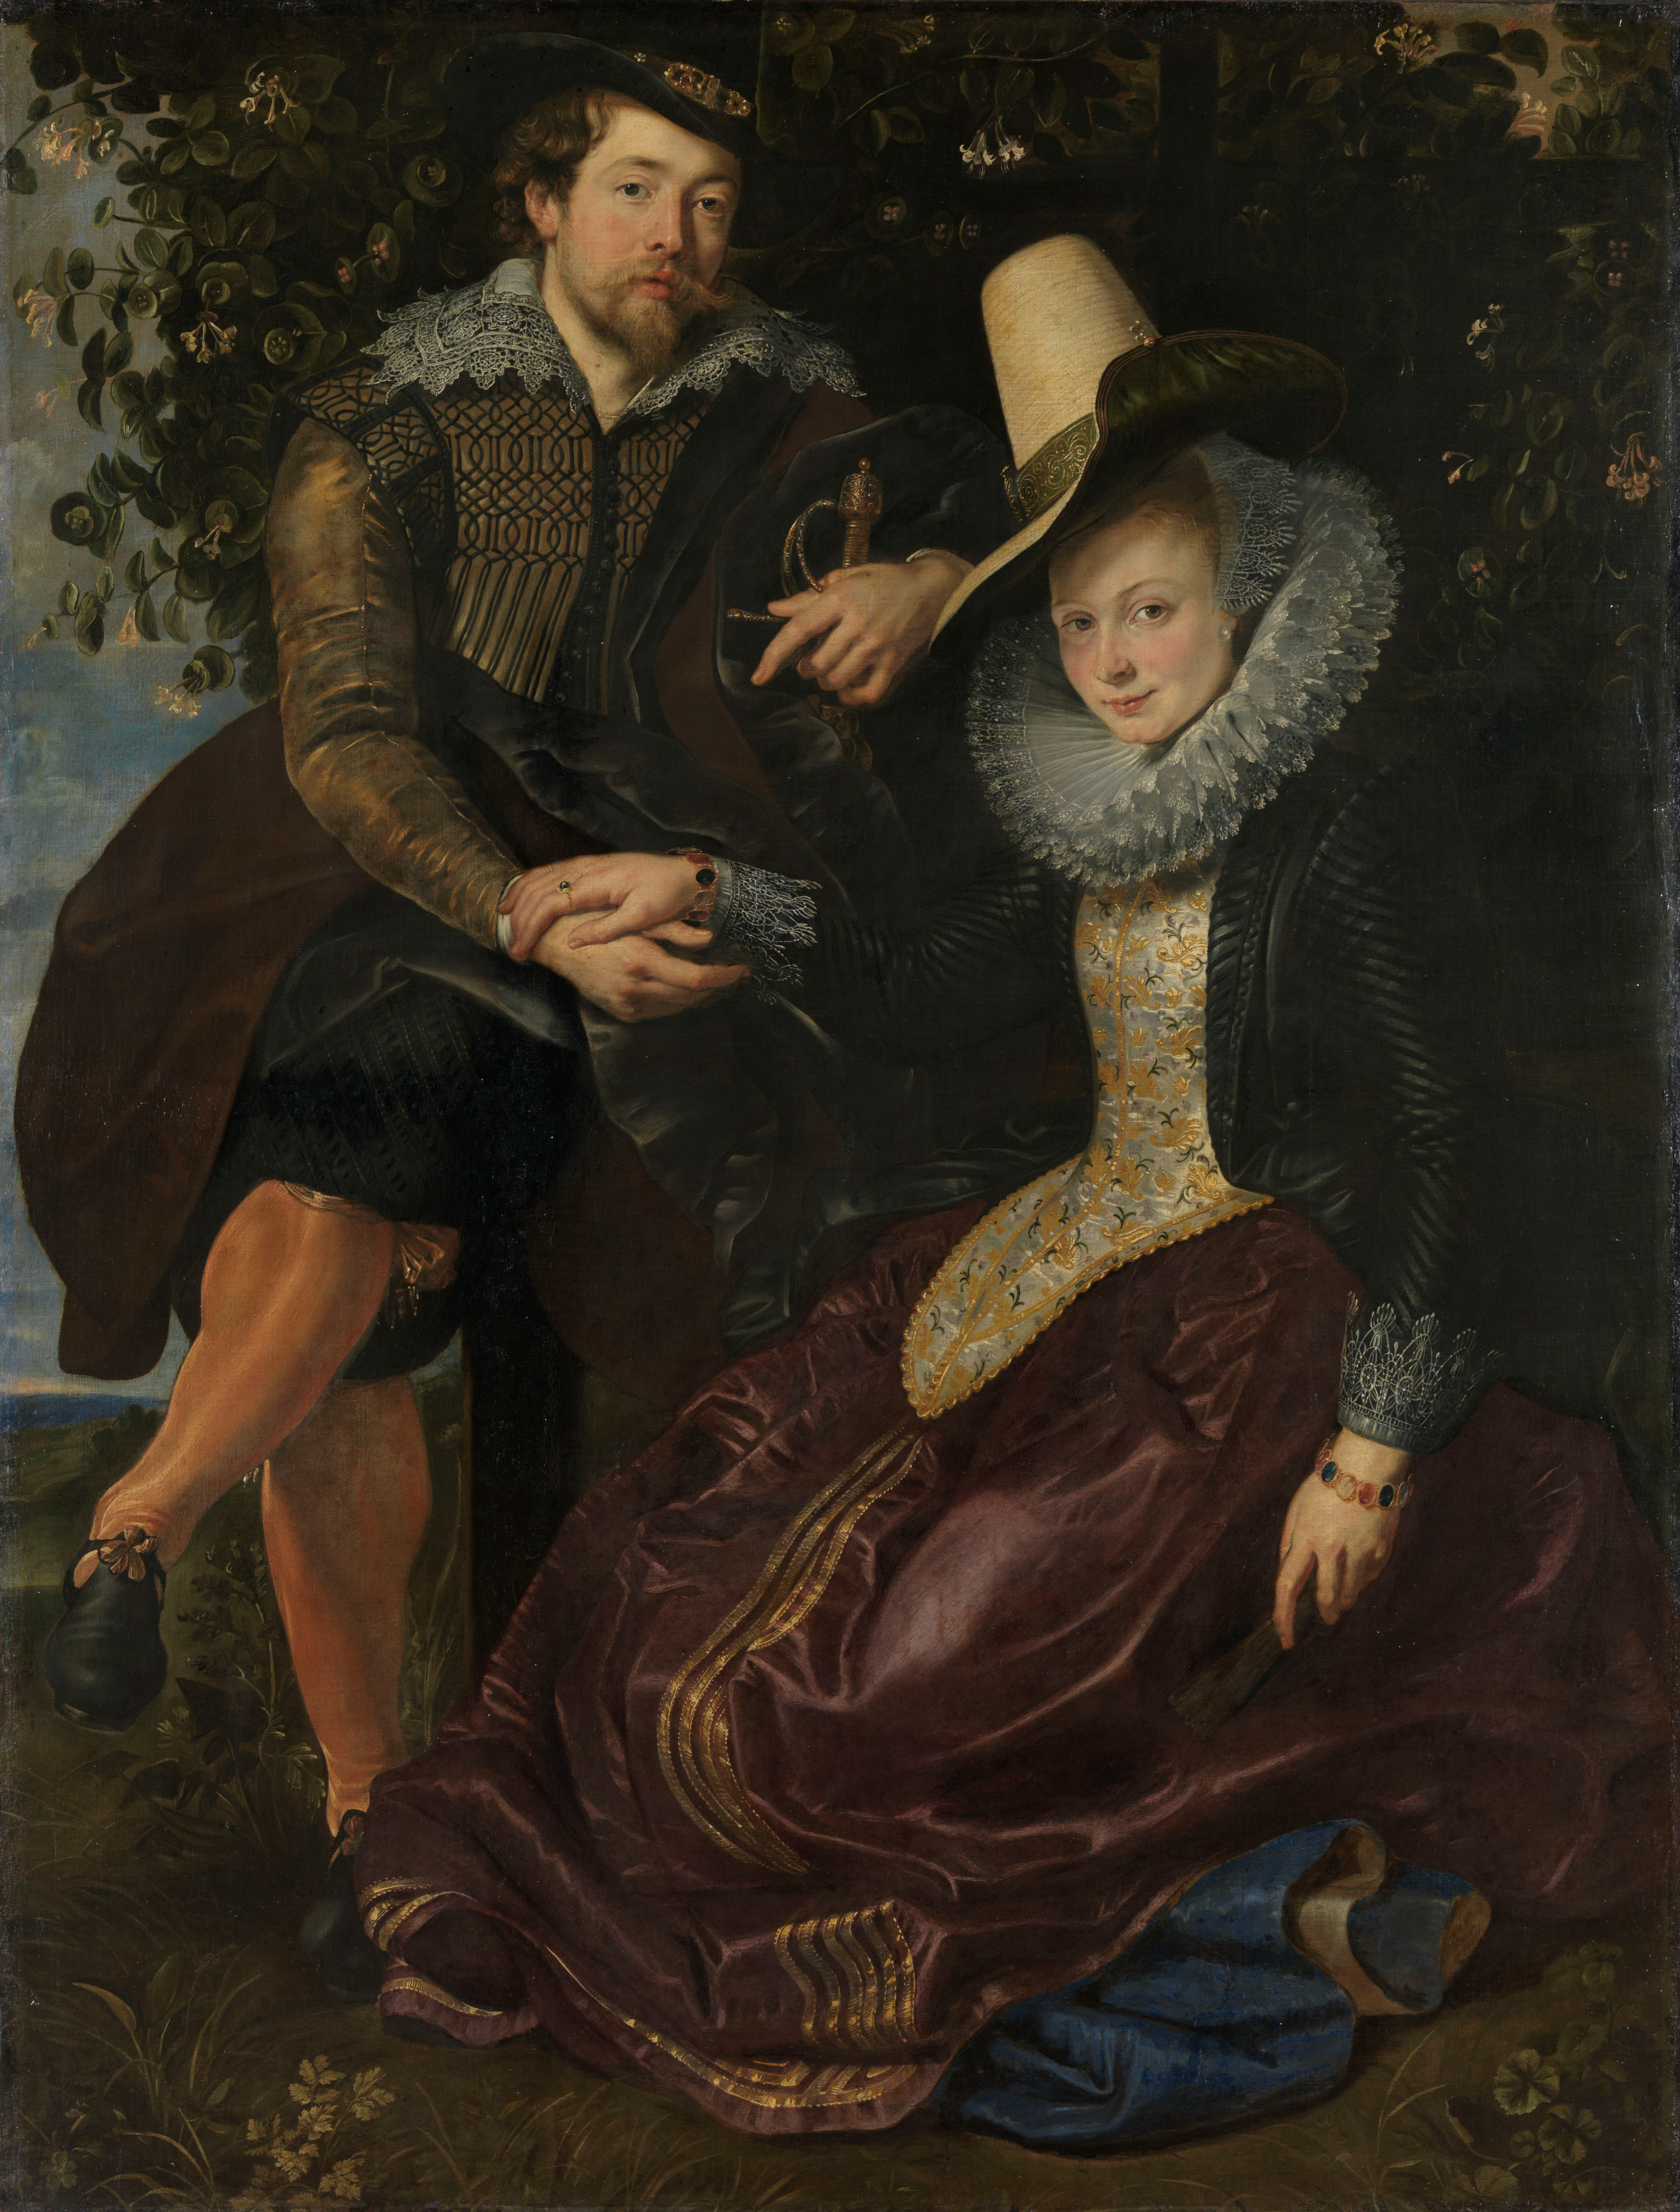 Autoritratto con la moglie Isabella Brant by Peter Paul Rubens - attorno 1609/10 - 178 x 136,5 cm Alte Pinakothek